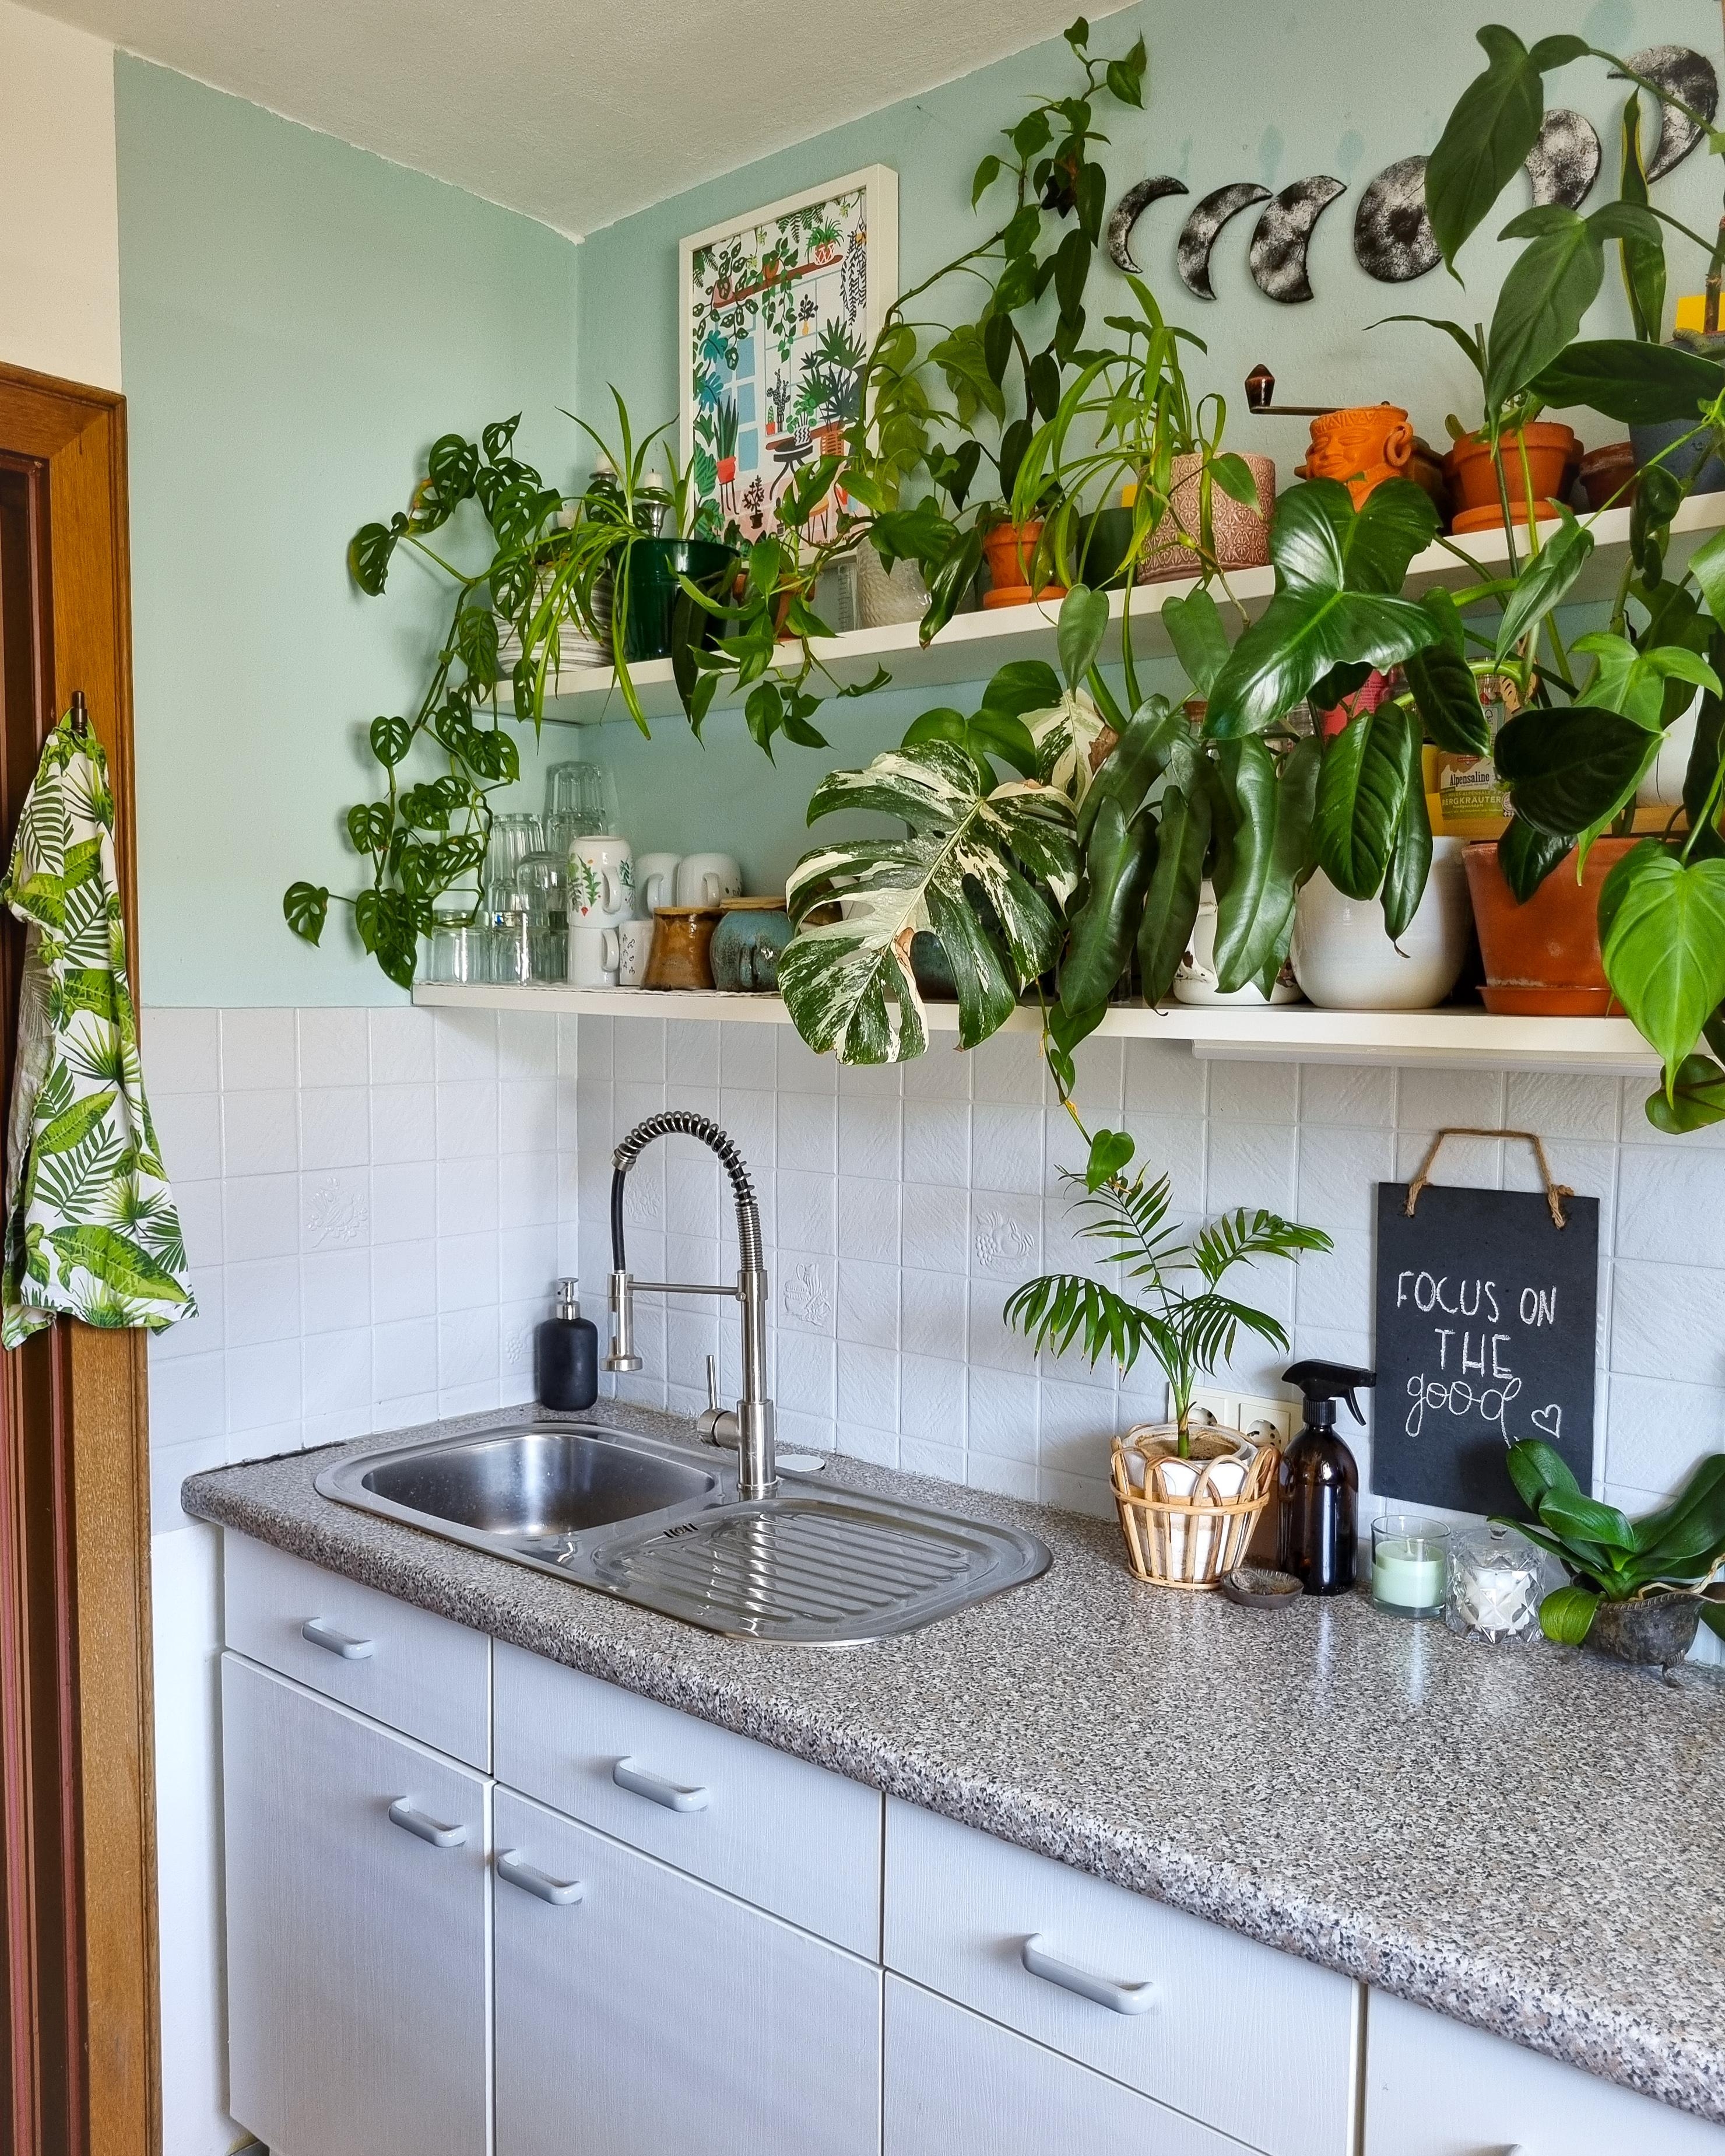 TGIF 🪴✌🏼 #Küche #Pflanzen #Regal #Zimmerpflanzen #spüle #dekoidee #deko #Geschirr #keramik